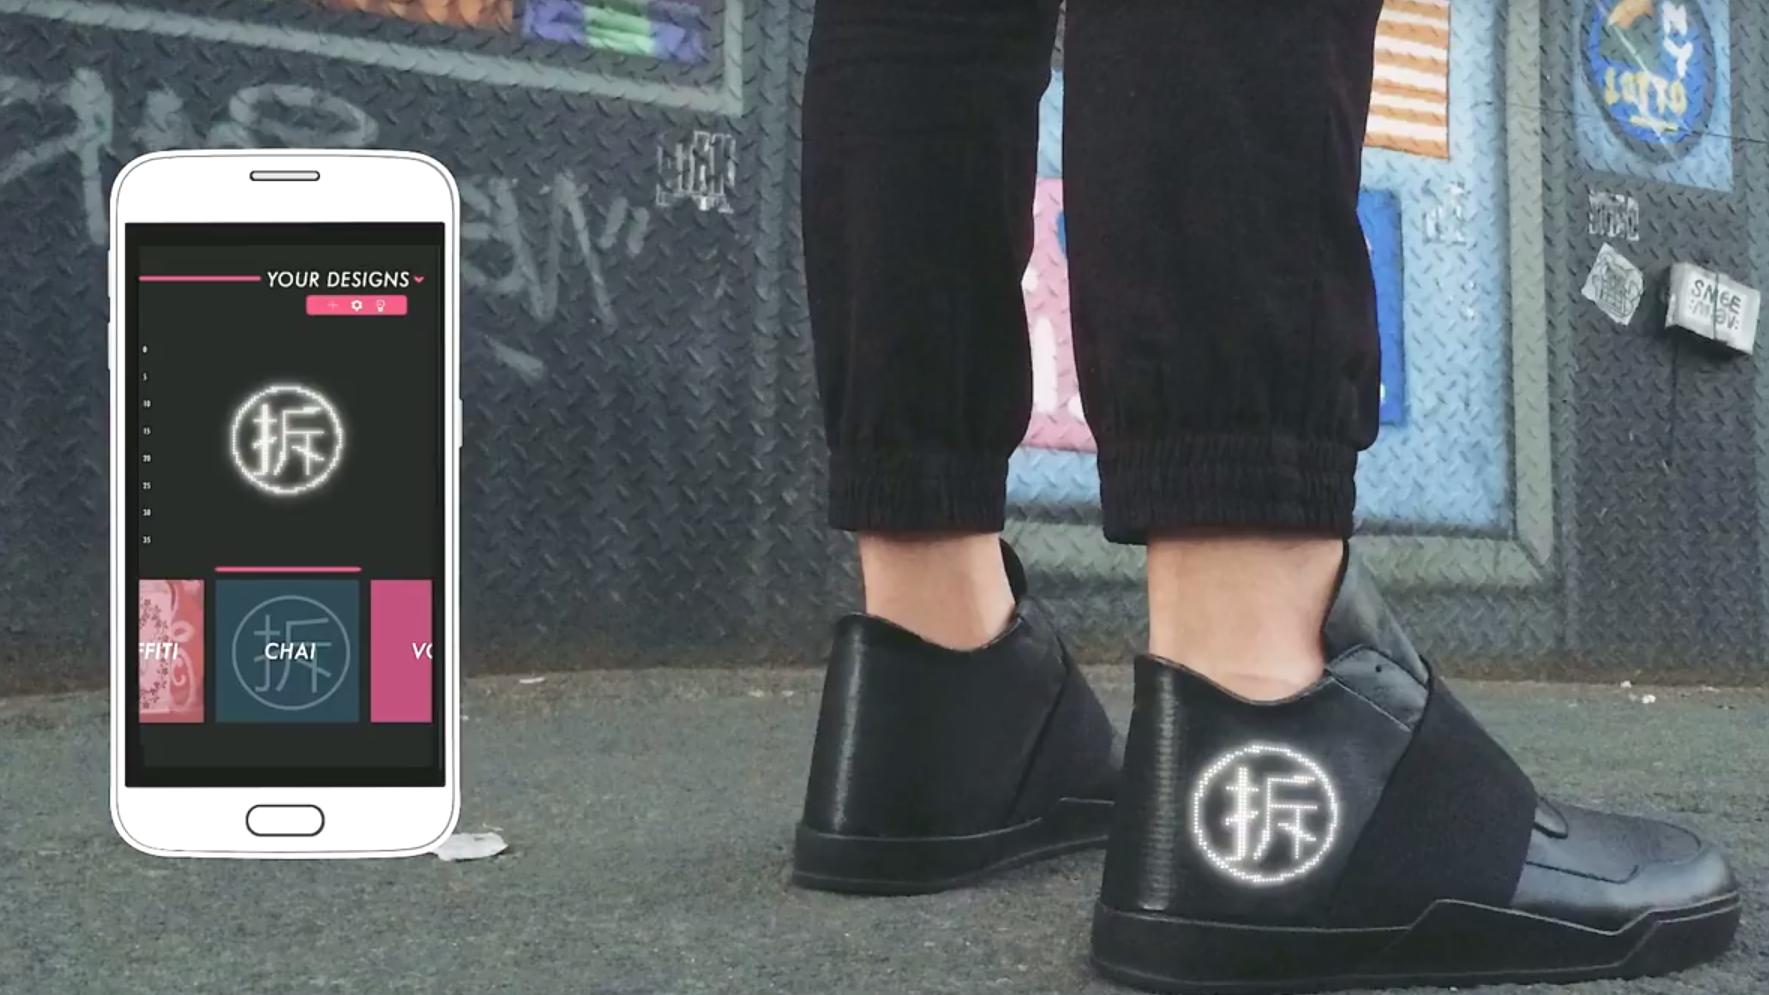 Disse smarte skoene har innebygget skjerm og kan hjelpe deg å navigere